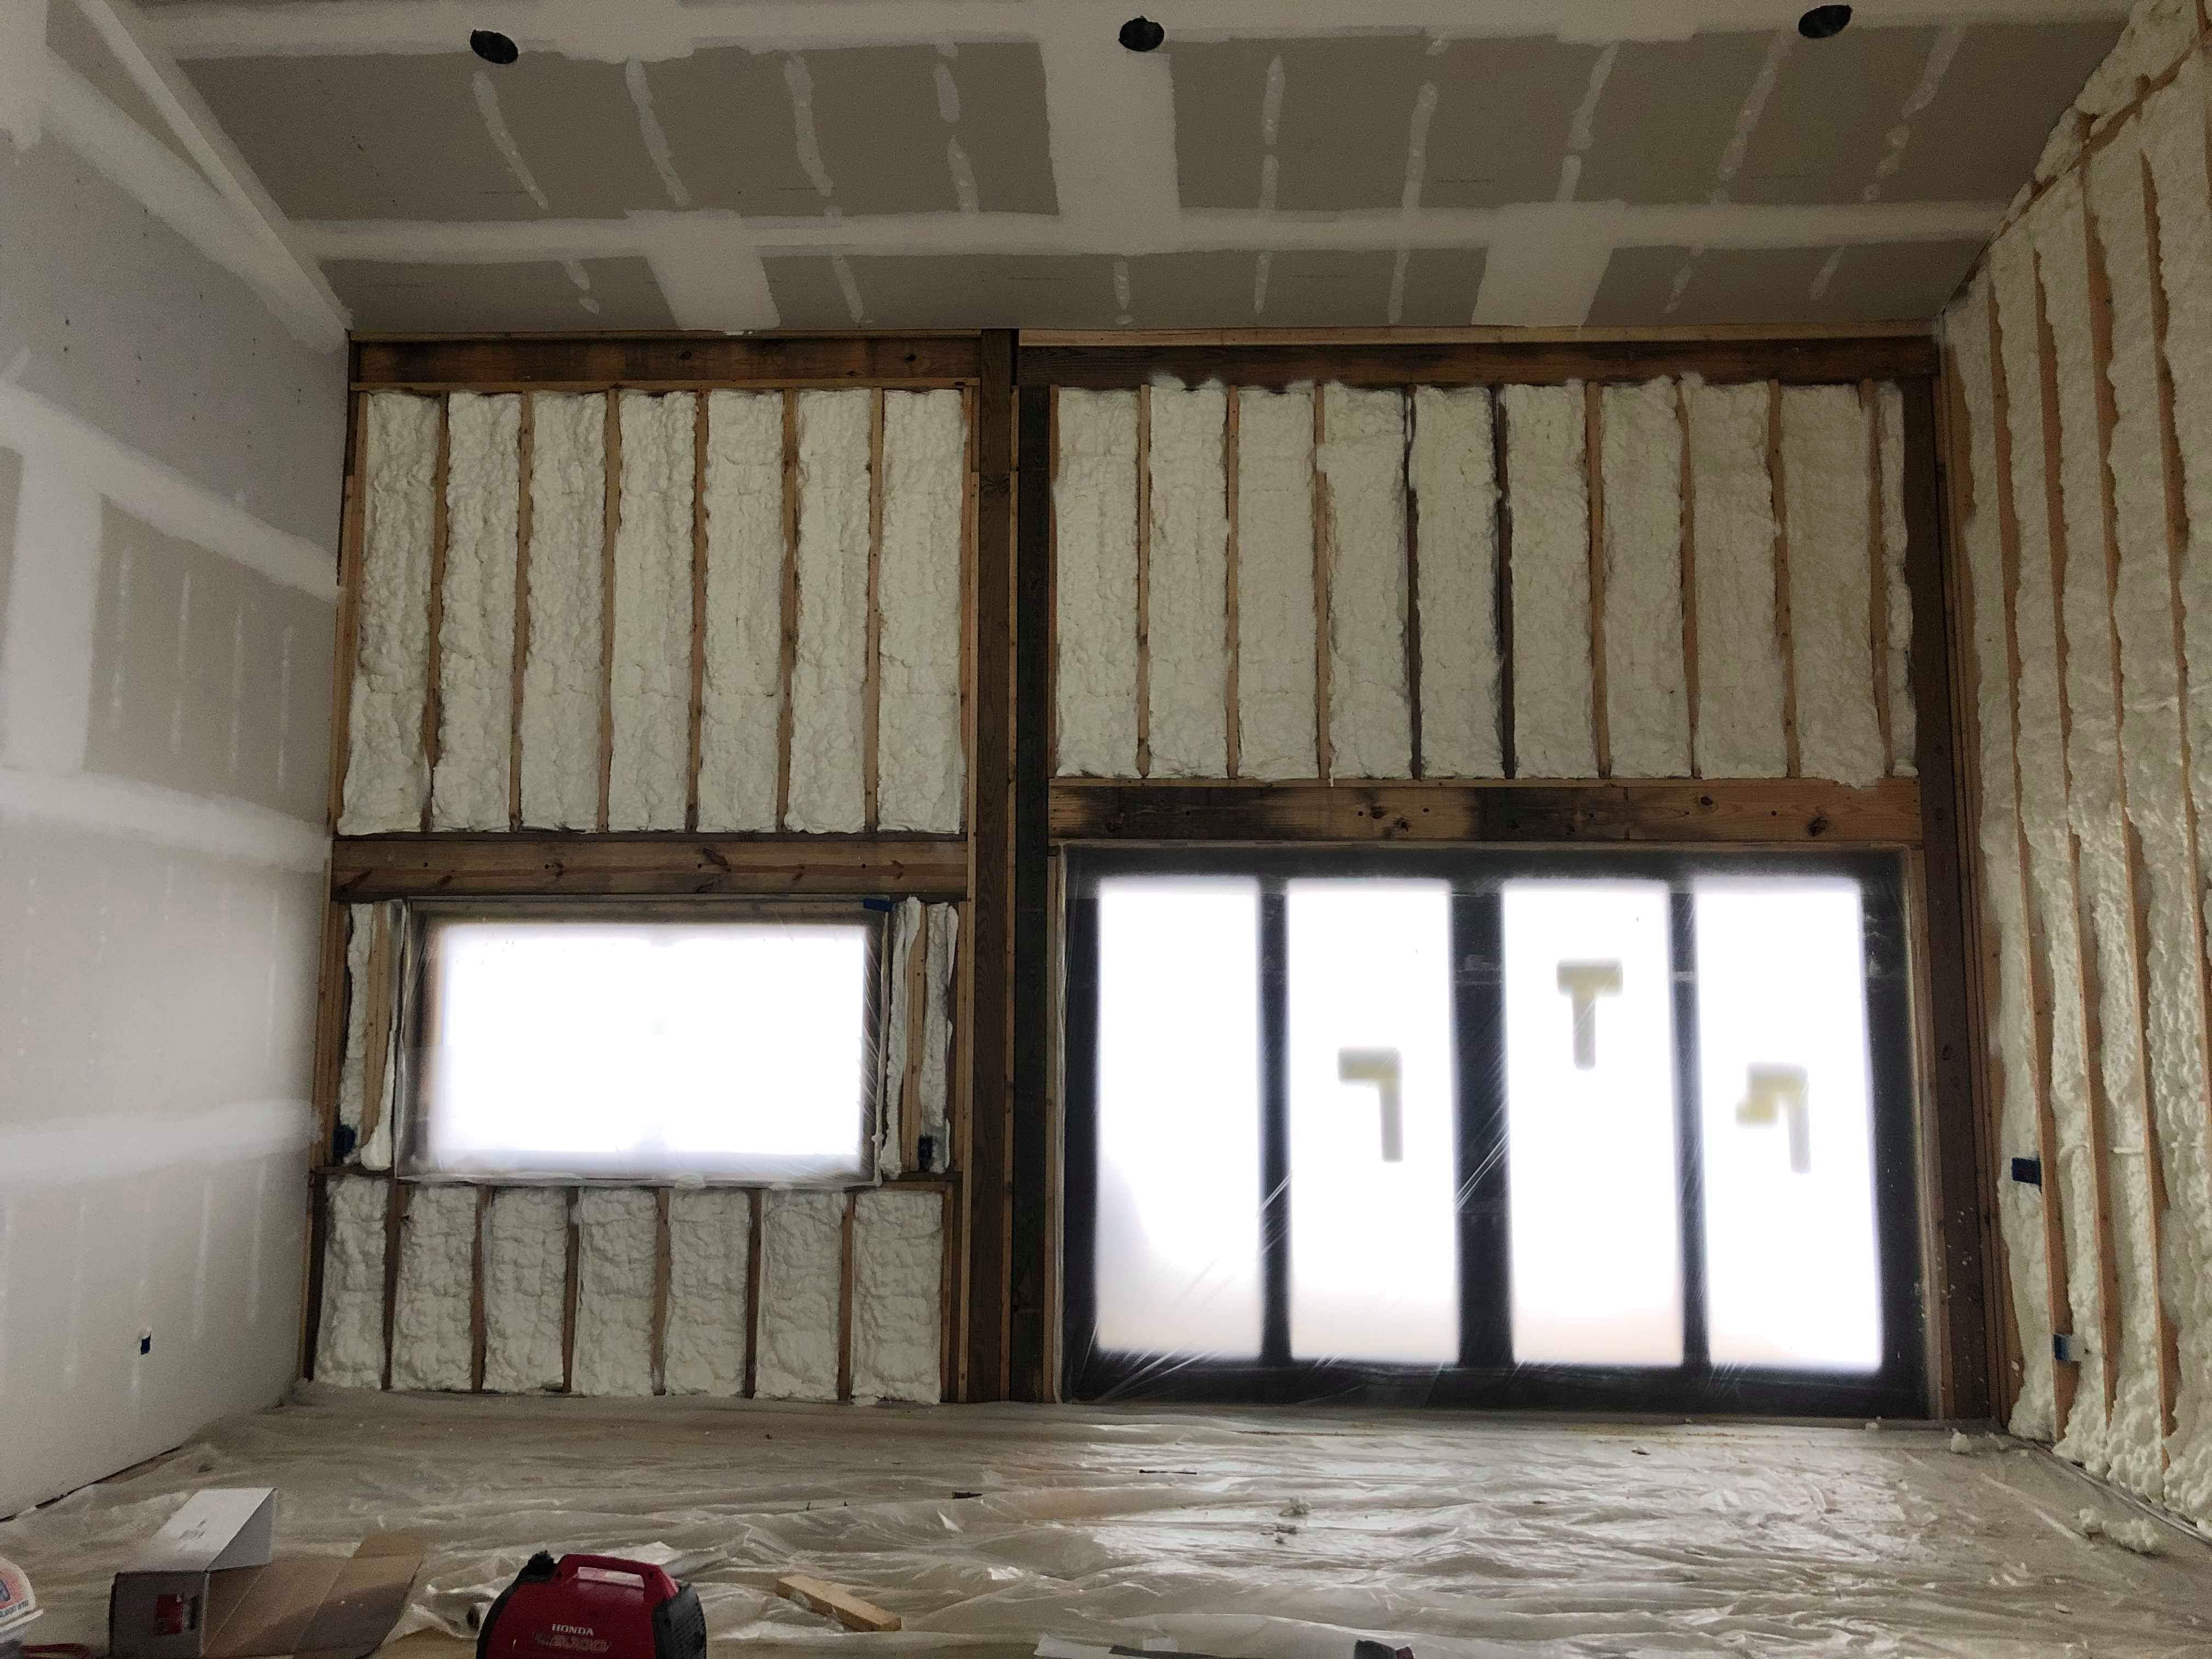 Garage doors with insulation